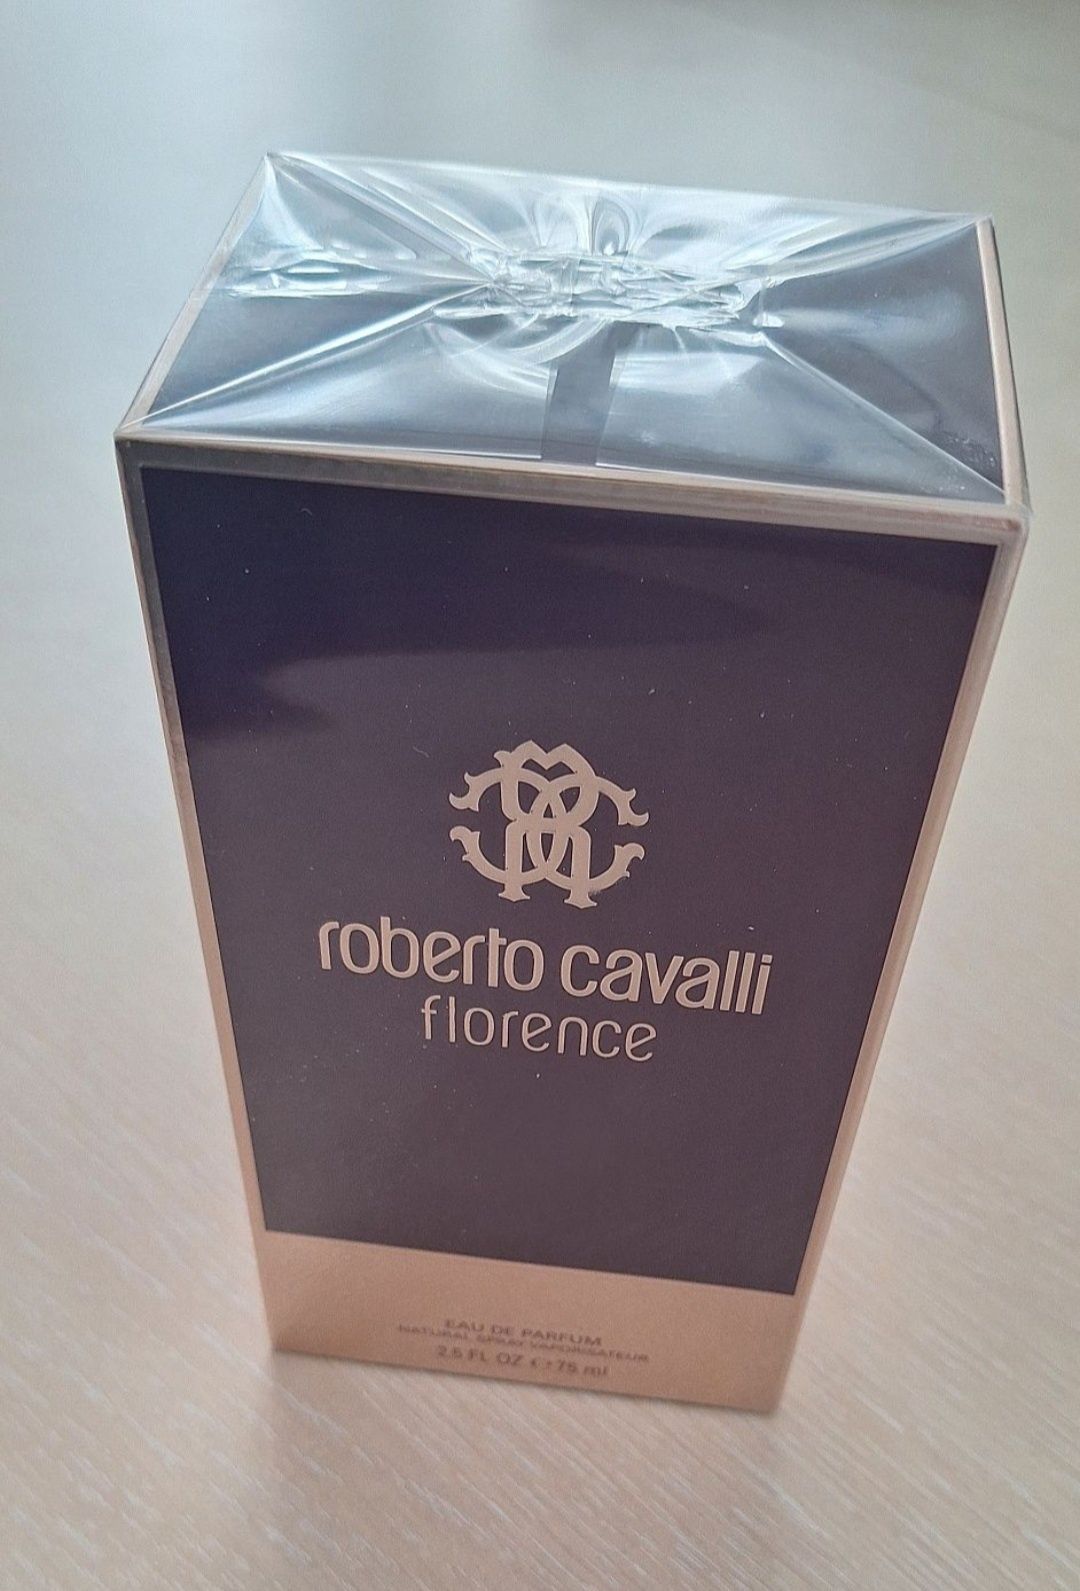 Roberto Cavalli Florence - apa parfum